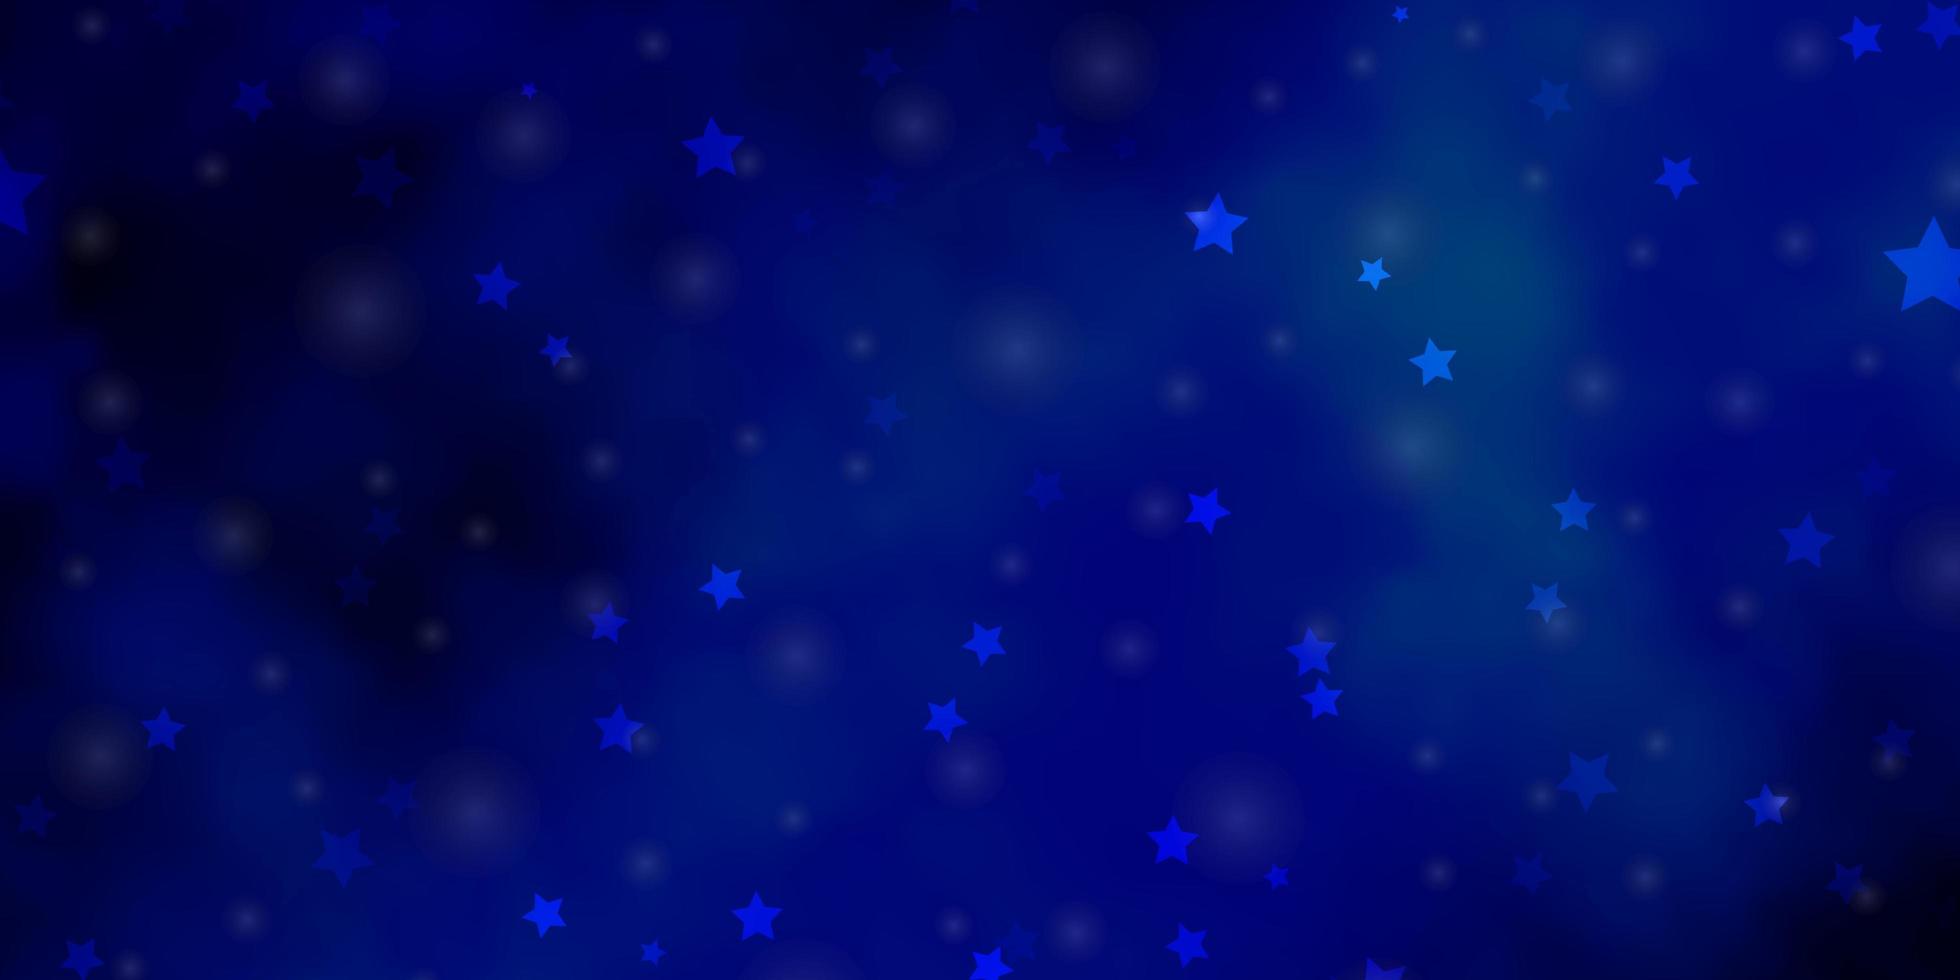 layout de vetor de luz azul com estrelas brilhantes. ilustração decorativa com estrelas no modelo abstrato. tema para telefones celulares.